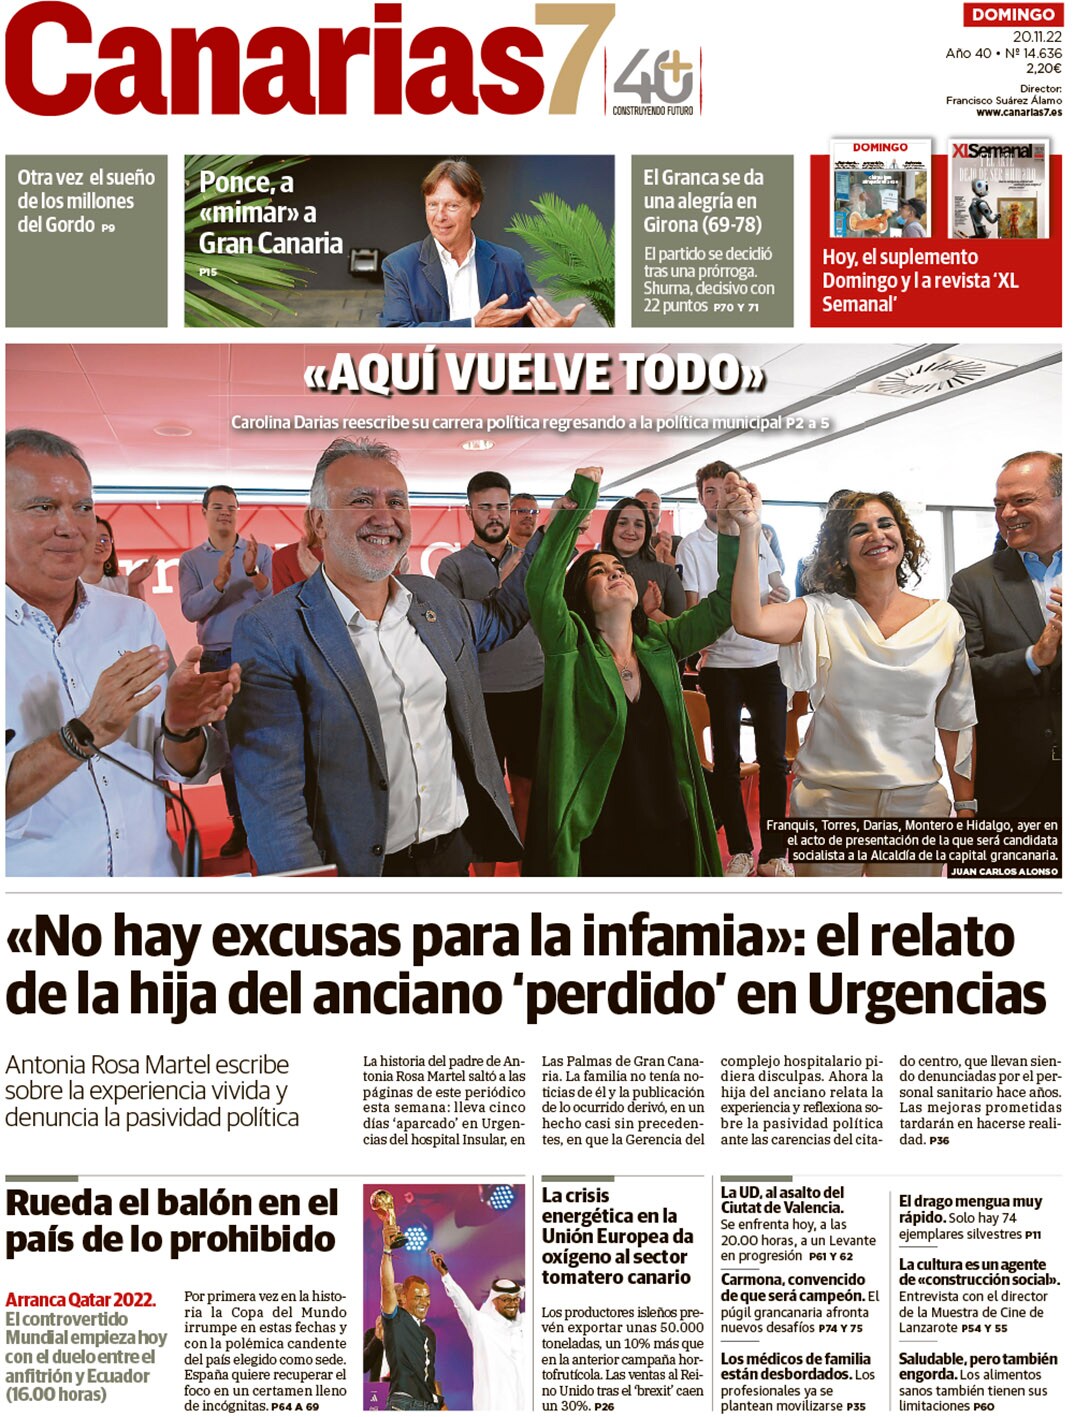 Vea la portada de CANARIAS7 de este domingo 20 de noviembre | Canarias7